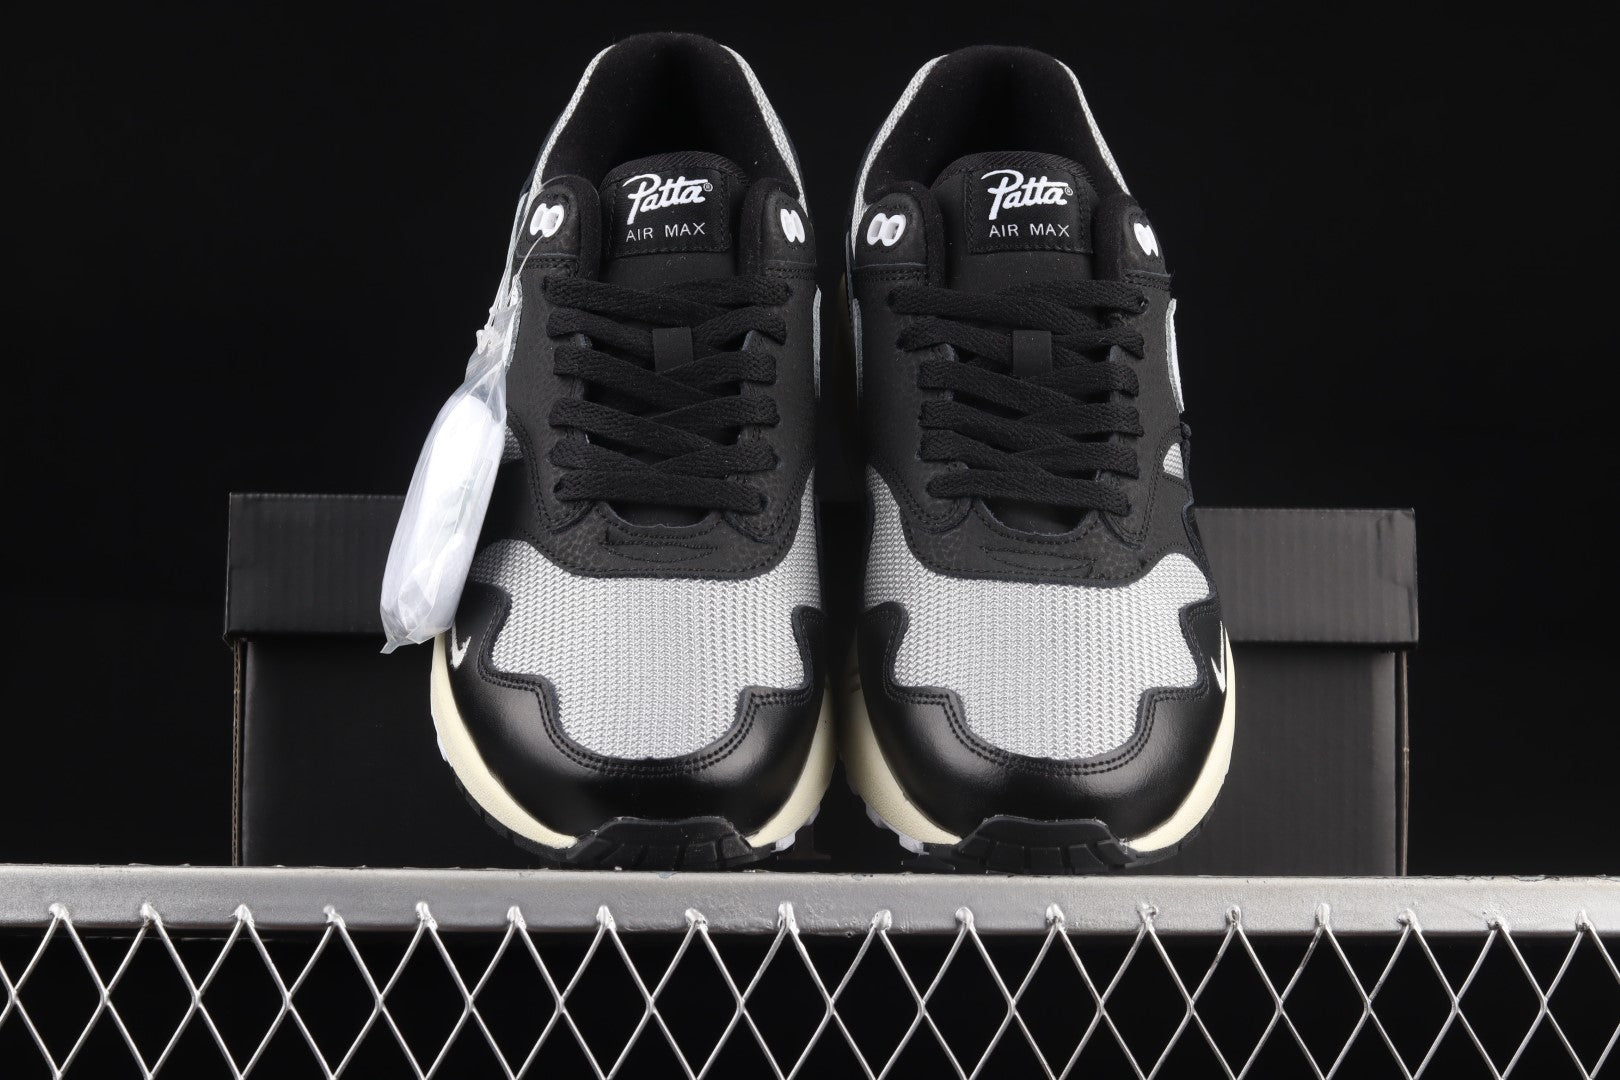 NikeMens Air Max 1 AM1 x Patta - Black